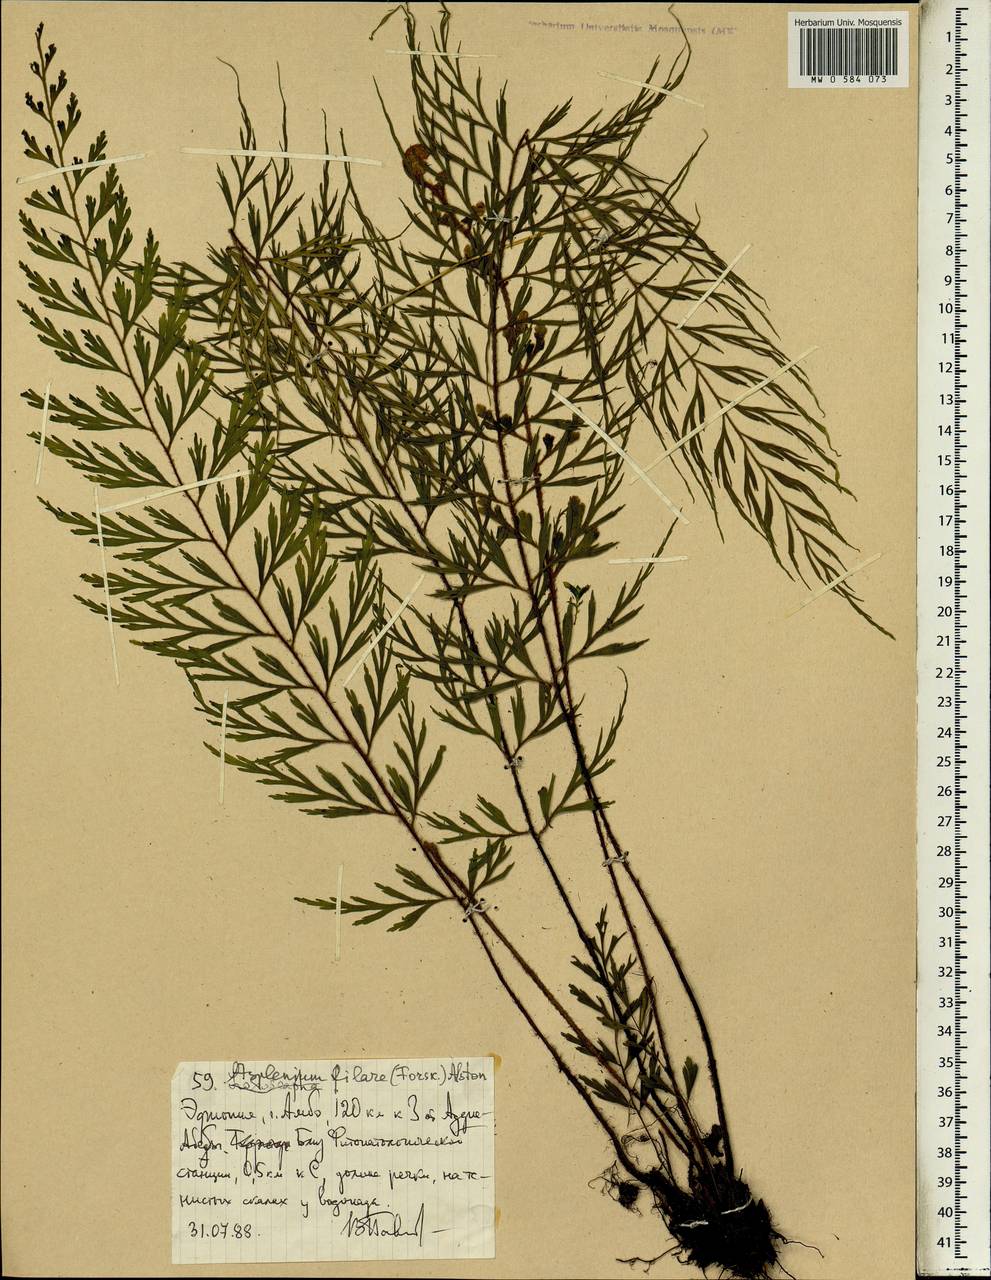 Asplenium aethiopicum subsp. filare (Forsk.) A.F.Braithw., Africa (AFR) (Ethiopia)